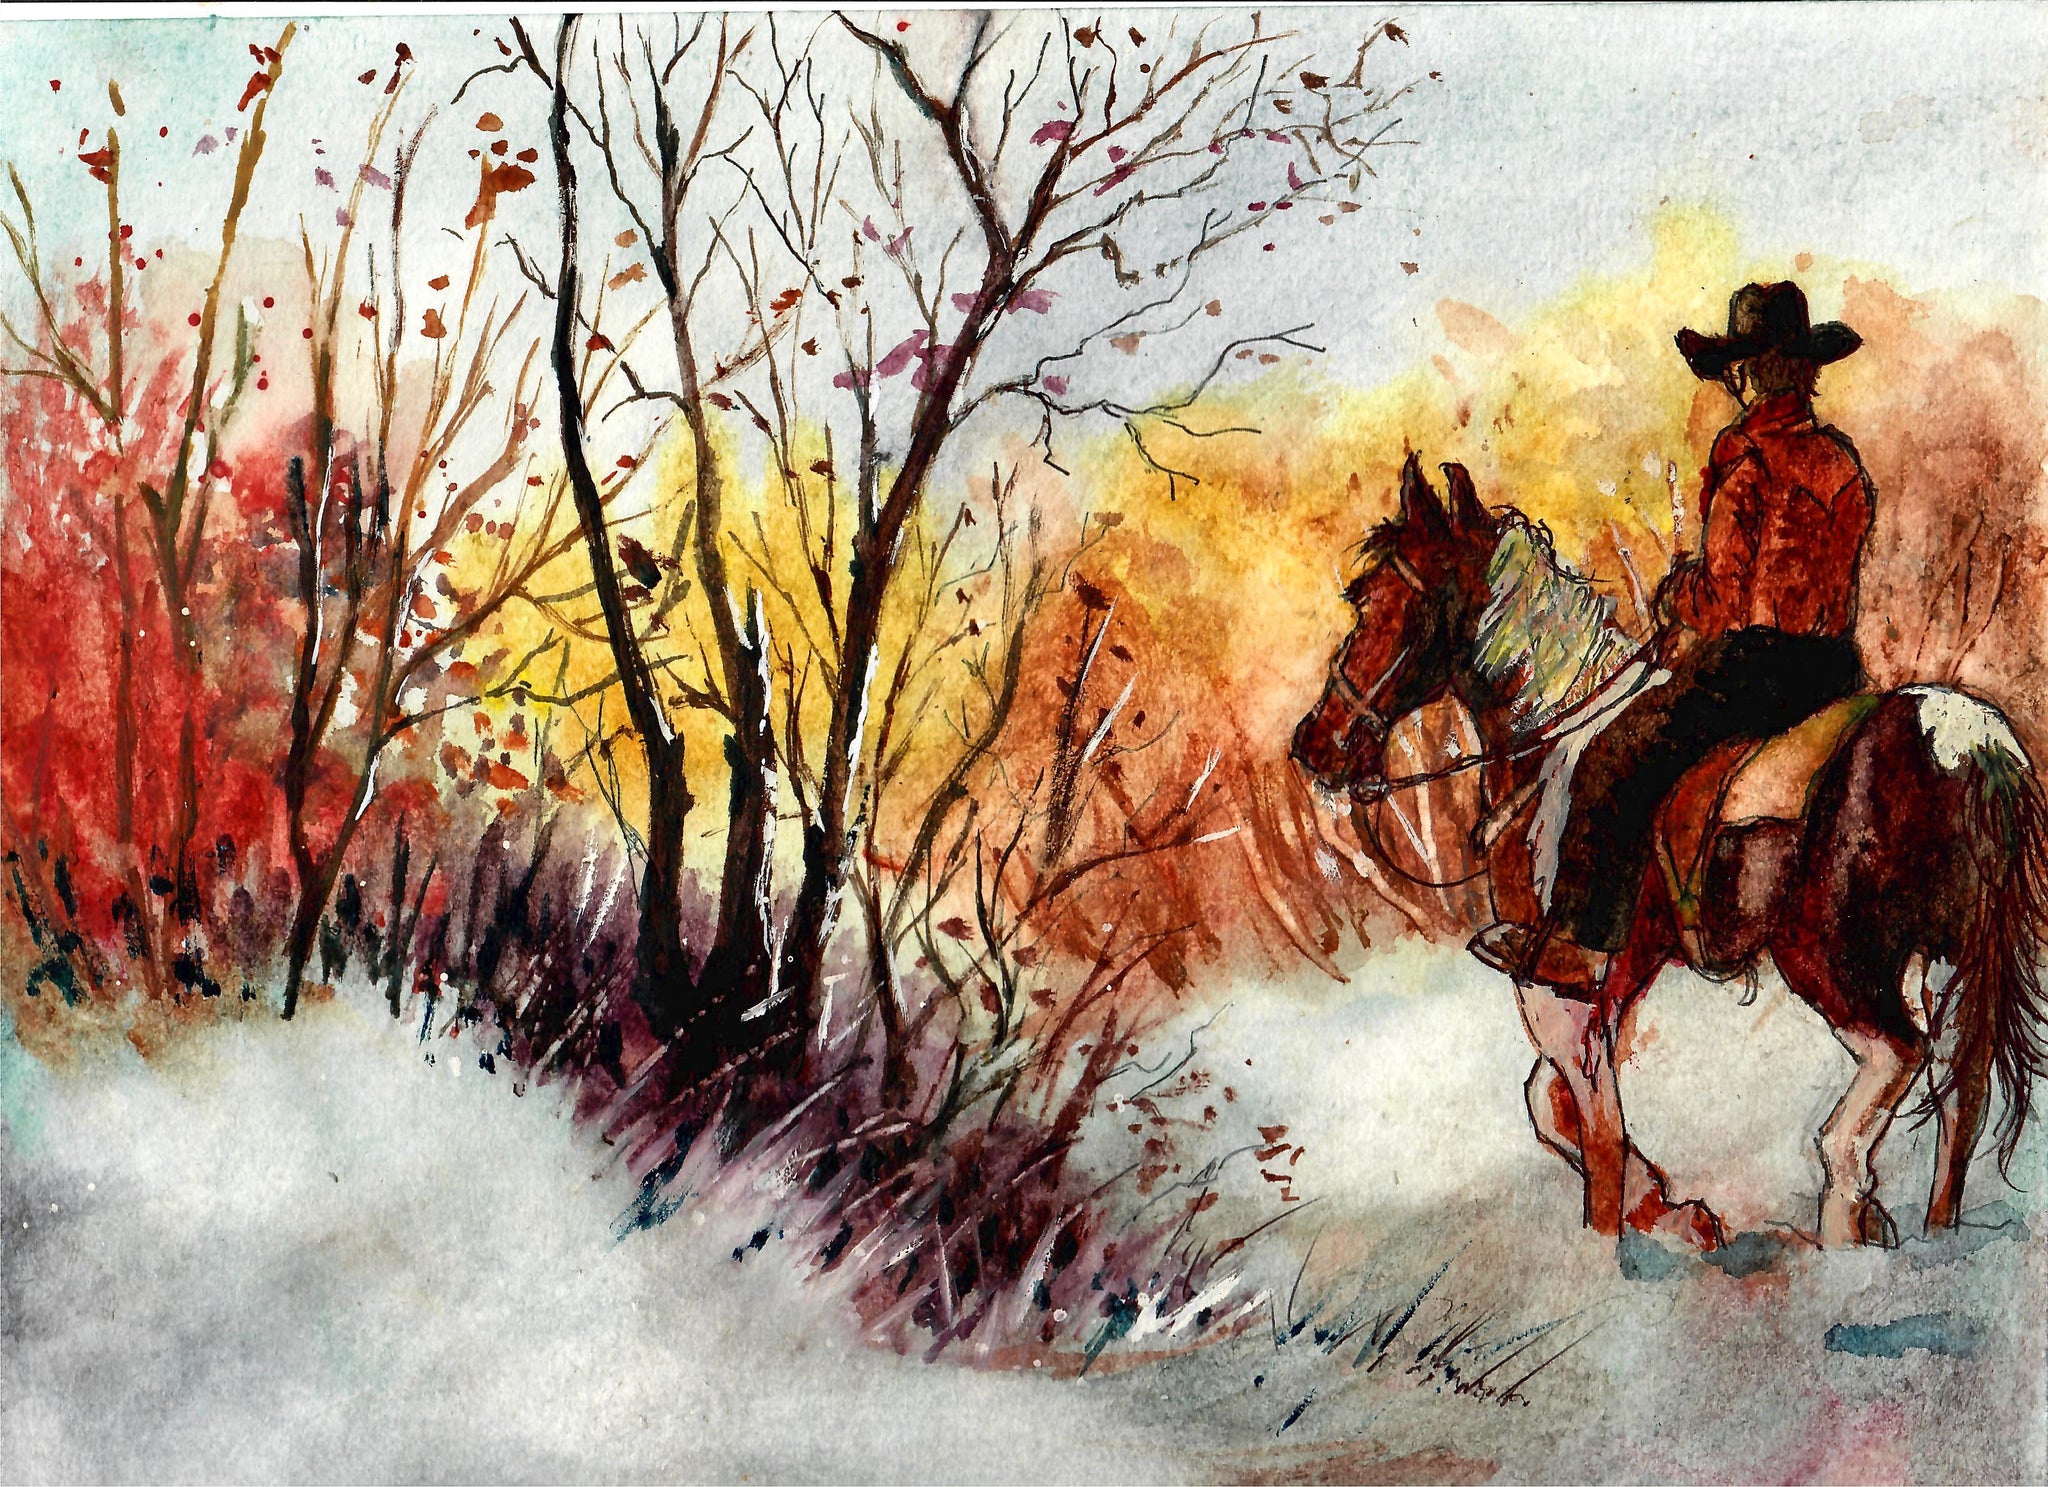 Western - Cowboy Riding In A Snowy Field, Cowboy Art, Western Wall Decor, Winter Western